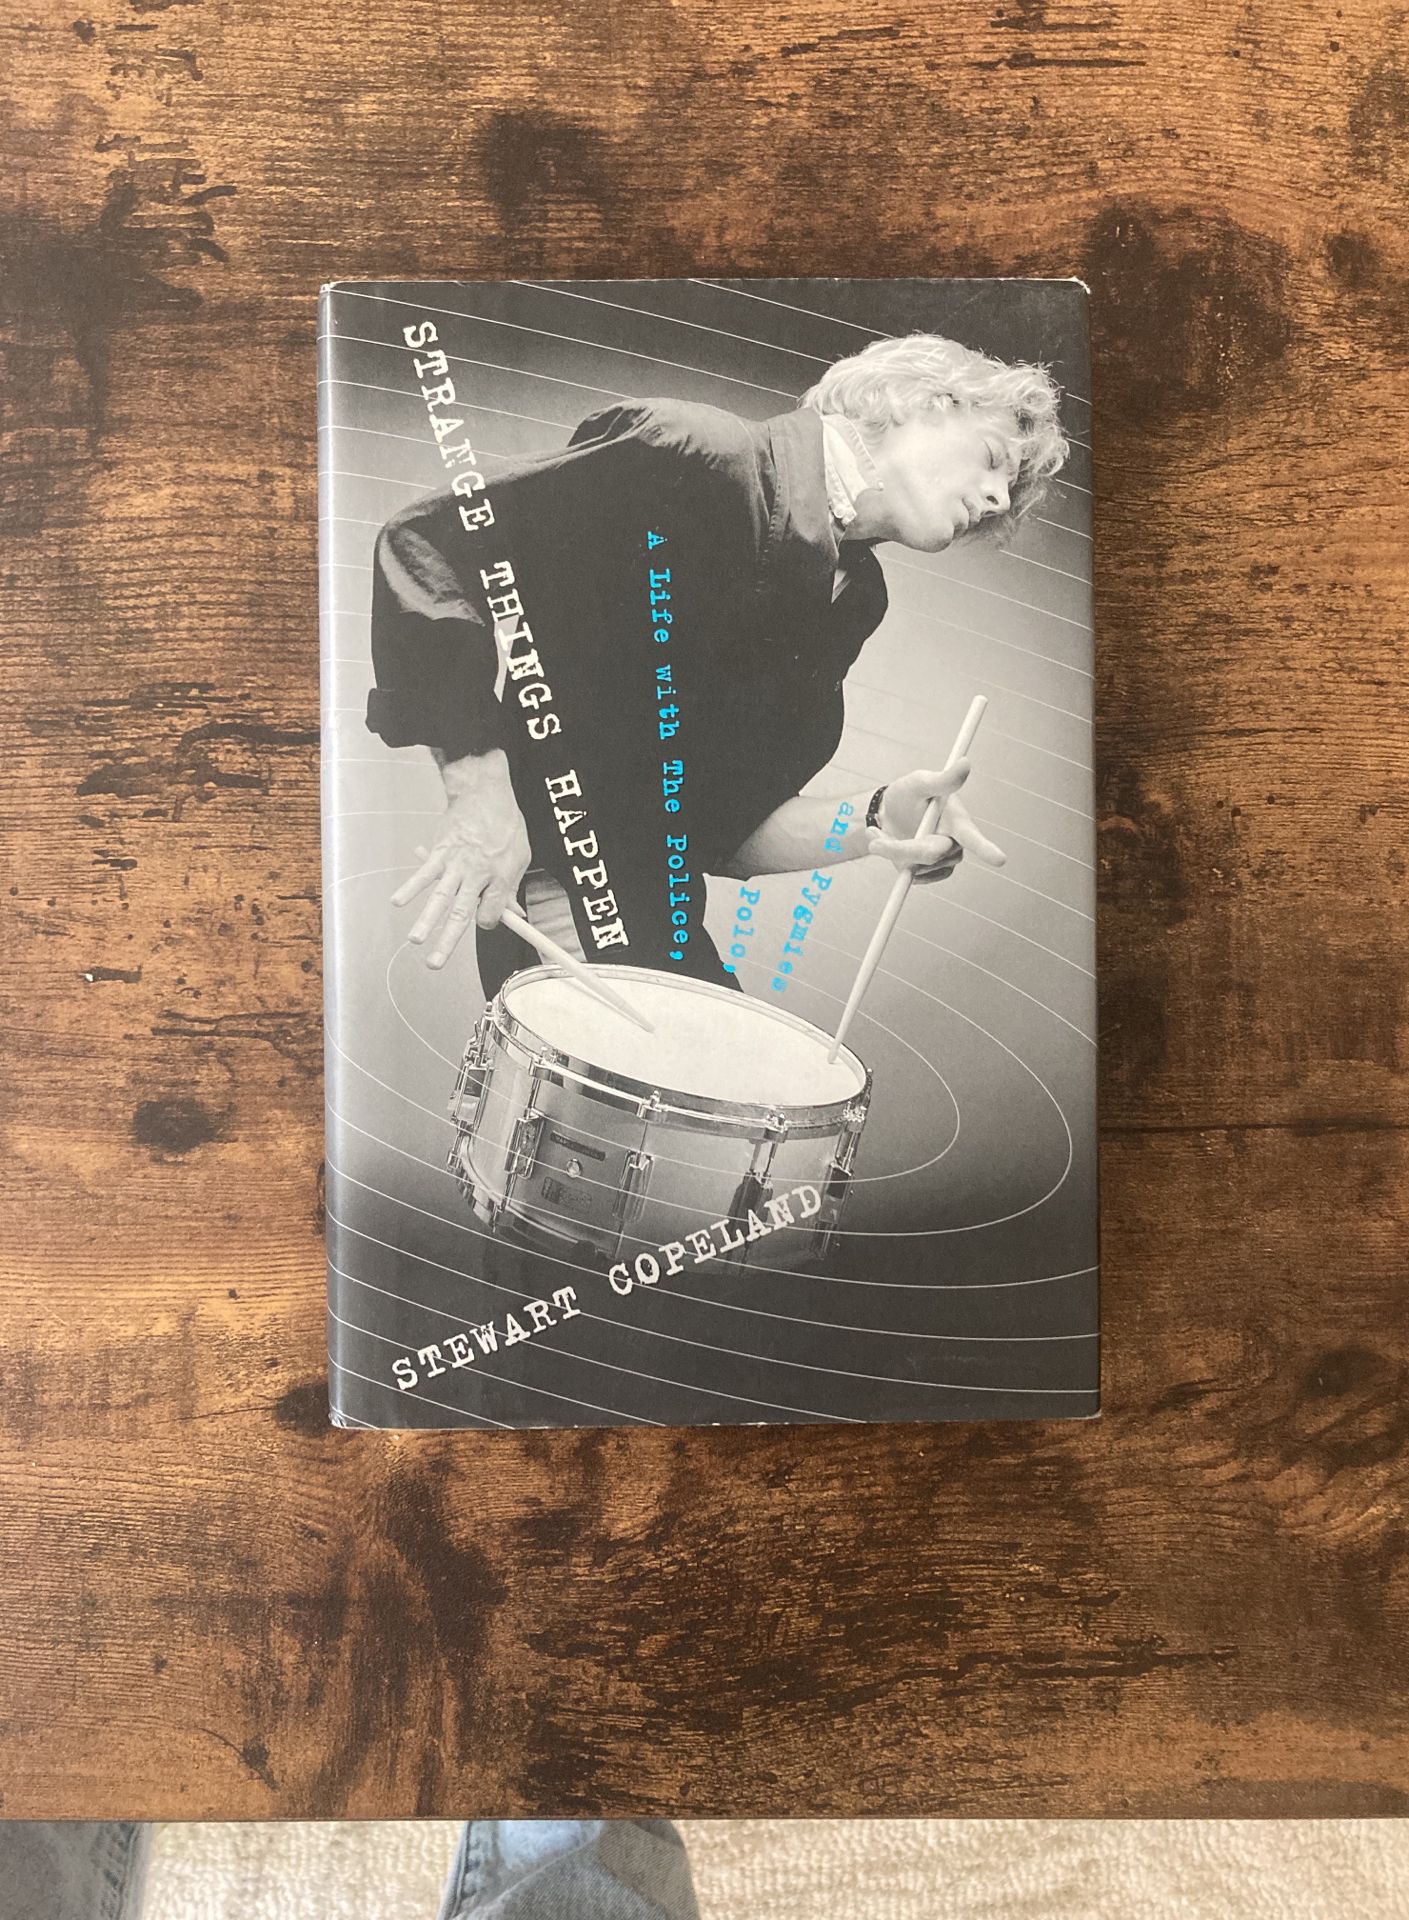 Stewart Copeland Book (drummer, The Police)